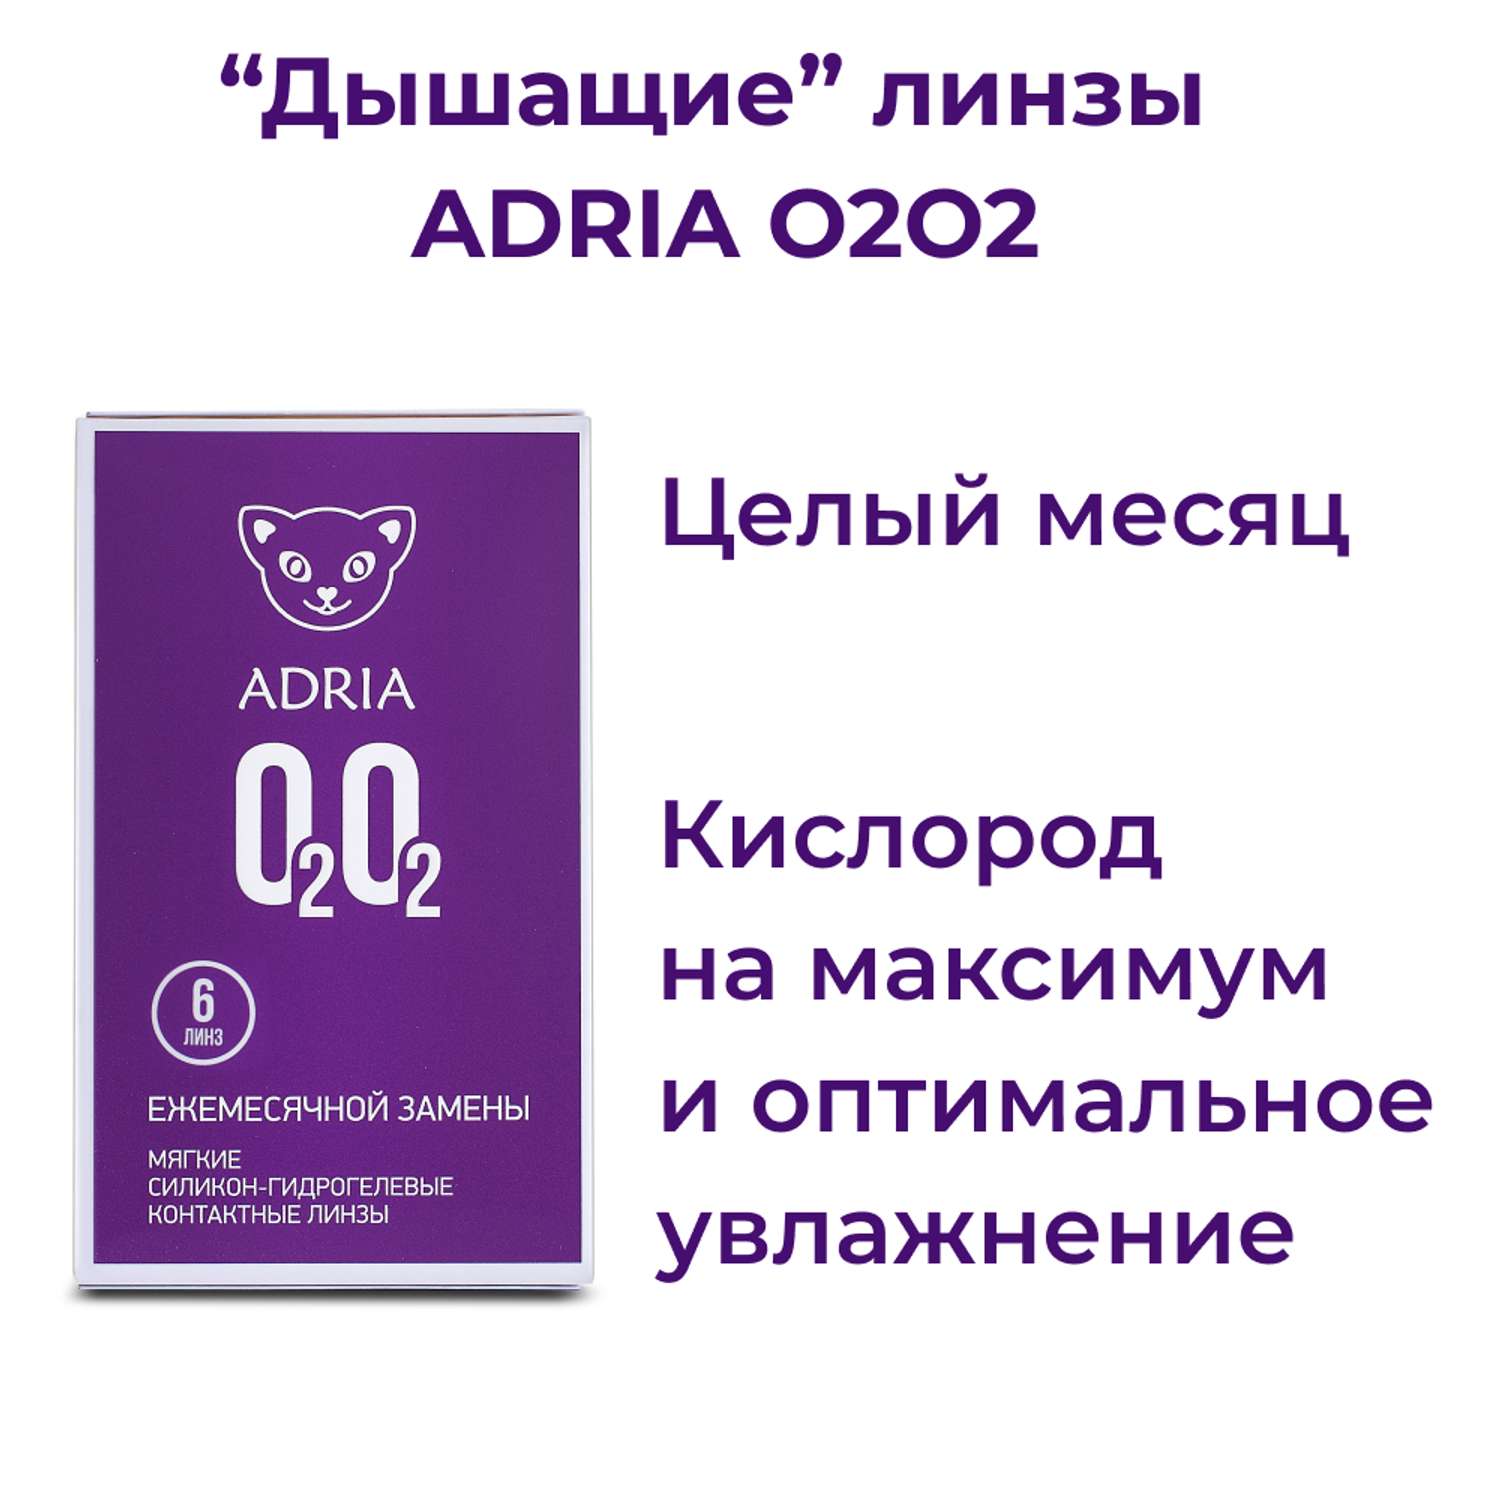 Контактные линзы ADRIA O2O2 6 линз R 8.6 -5.75 - фото 2